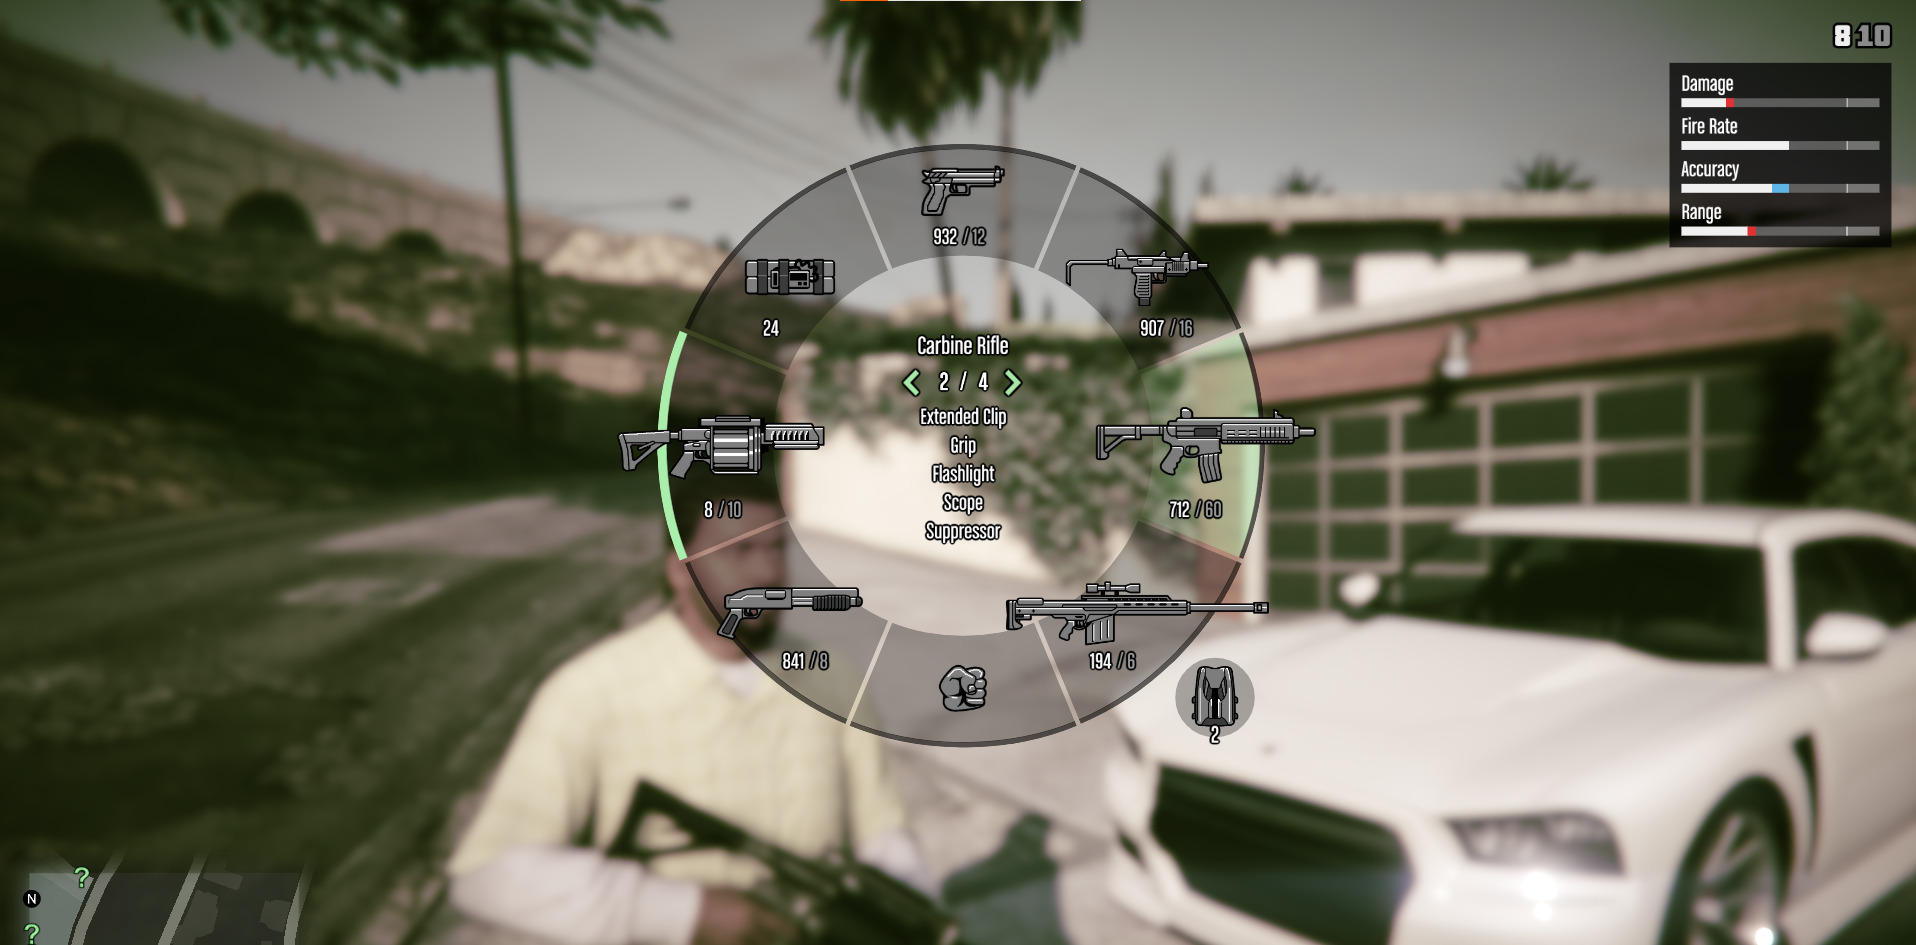 A screenshot showing the weapon wheel in GTA 5